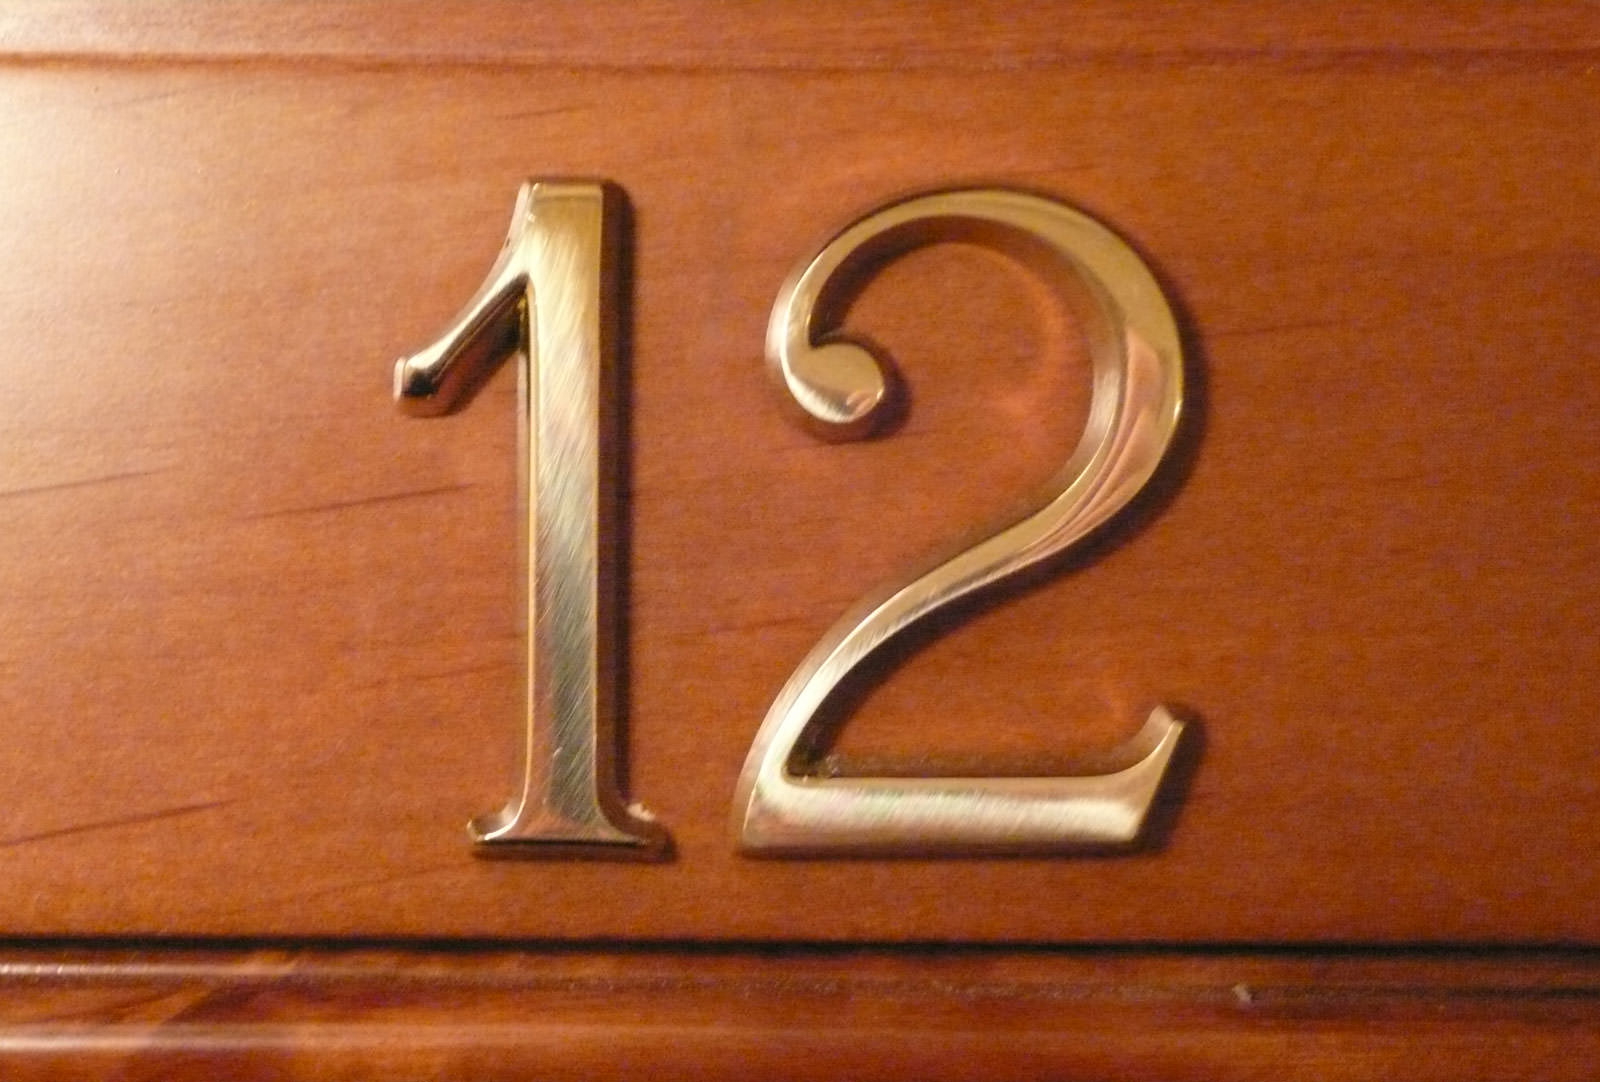 Цифра 1 для квартиры на дверь. Цифры на дверь квартиры. Номер квартиры цифры на дверь. Цифры для номера квартиры на входную дверь. Номерок на дверь.